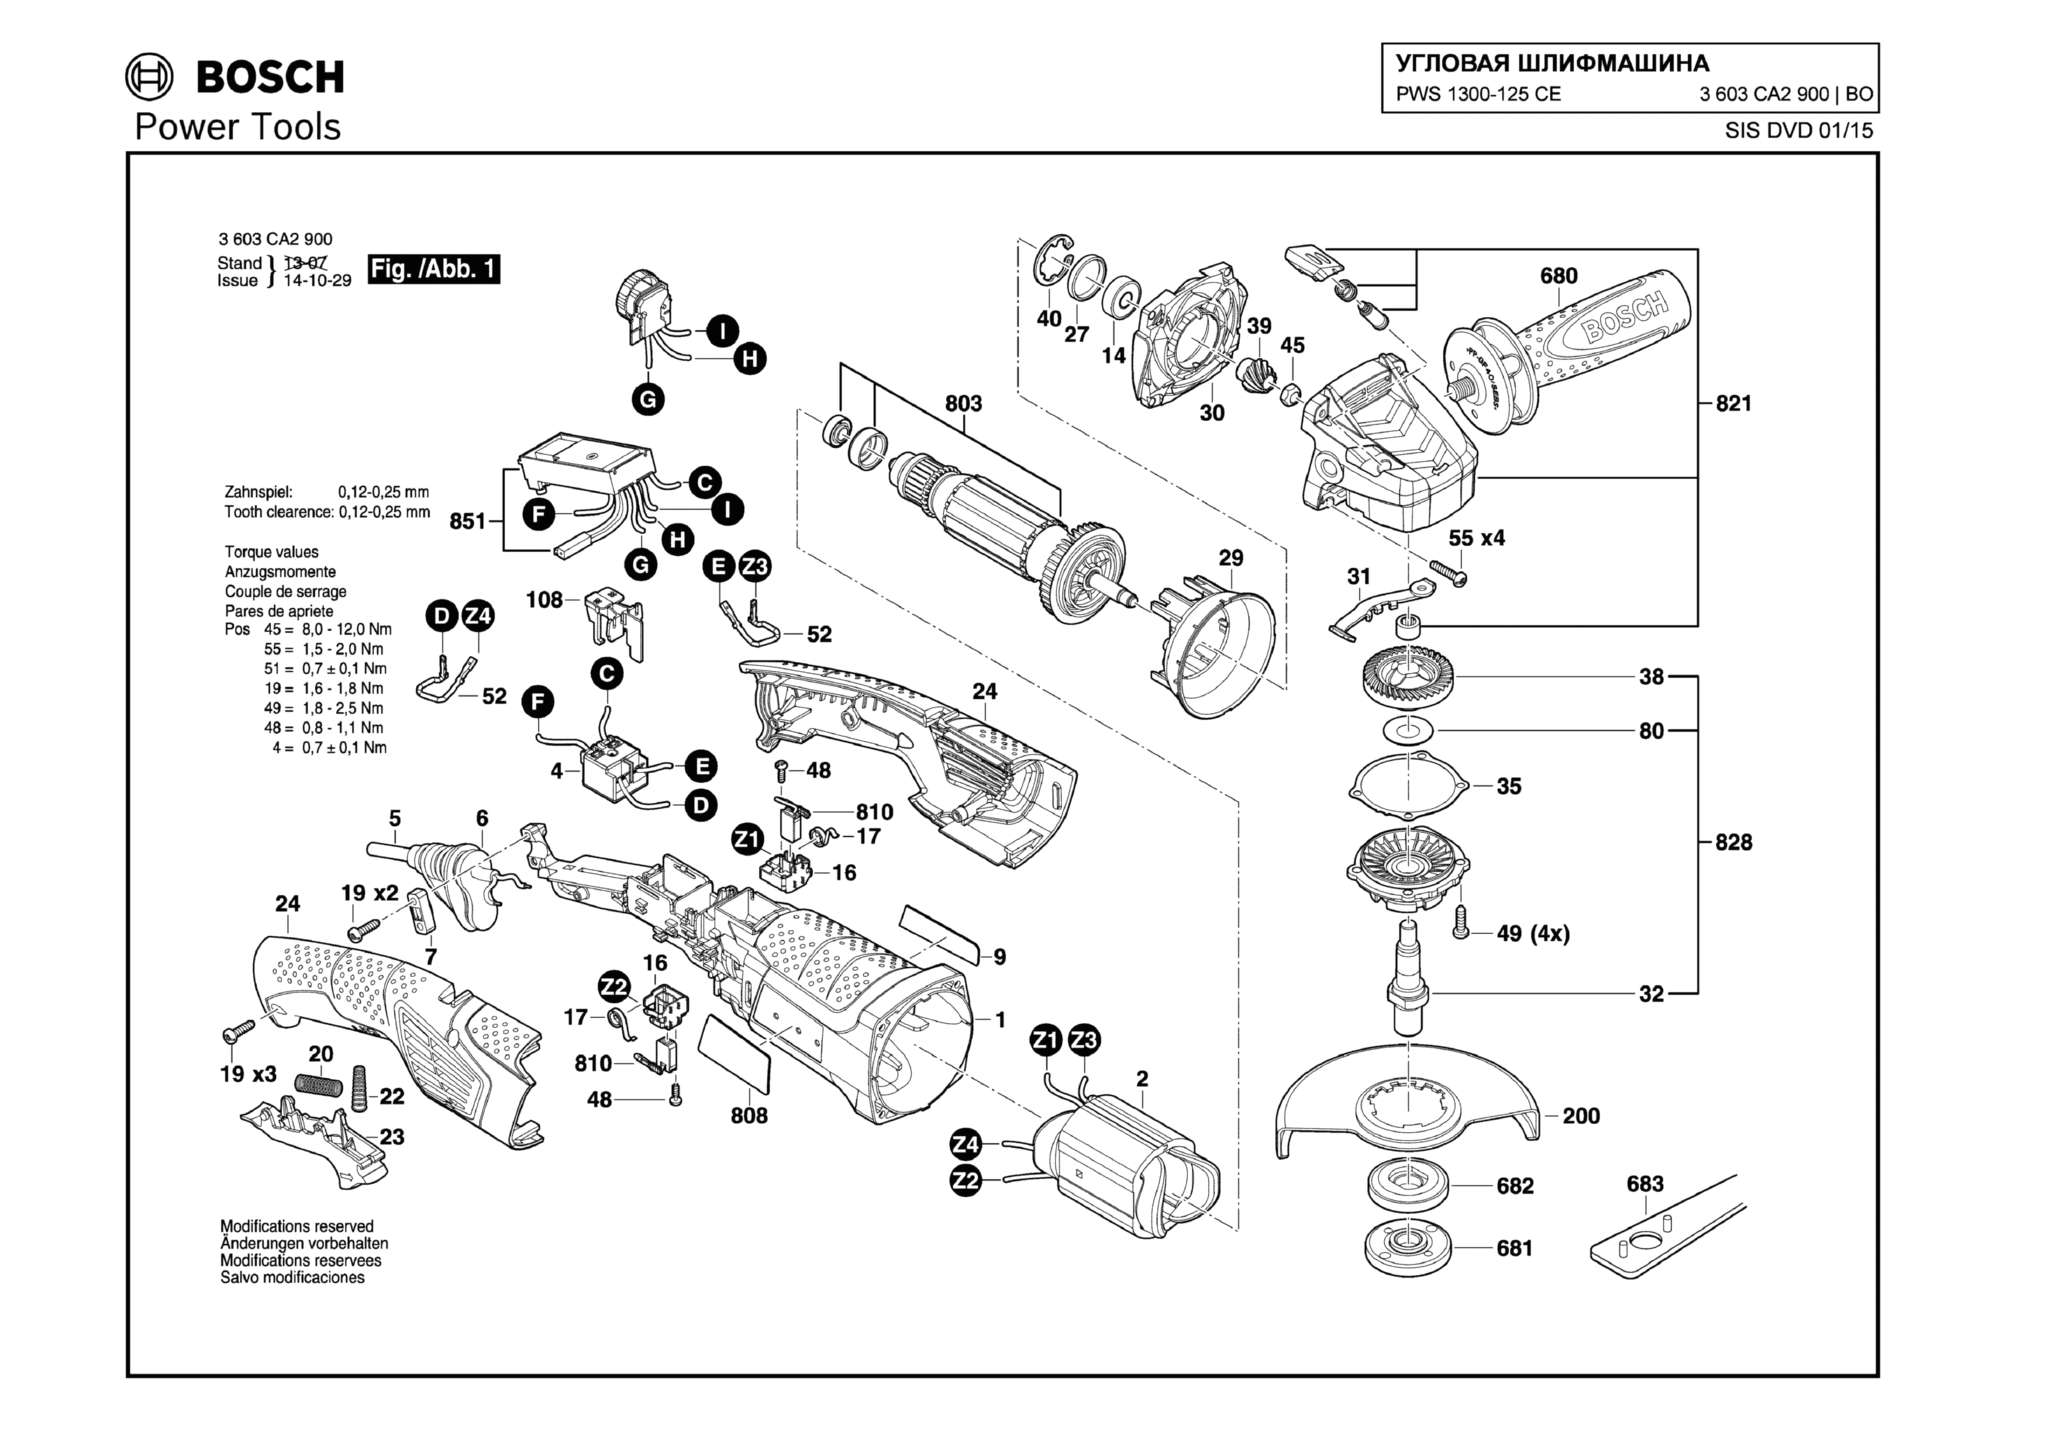 Запчасти, схема и деталировка Bosch PWS 1300-125 CE (ТИП 3603CA2900)